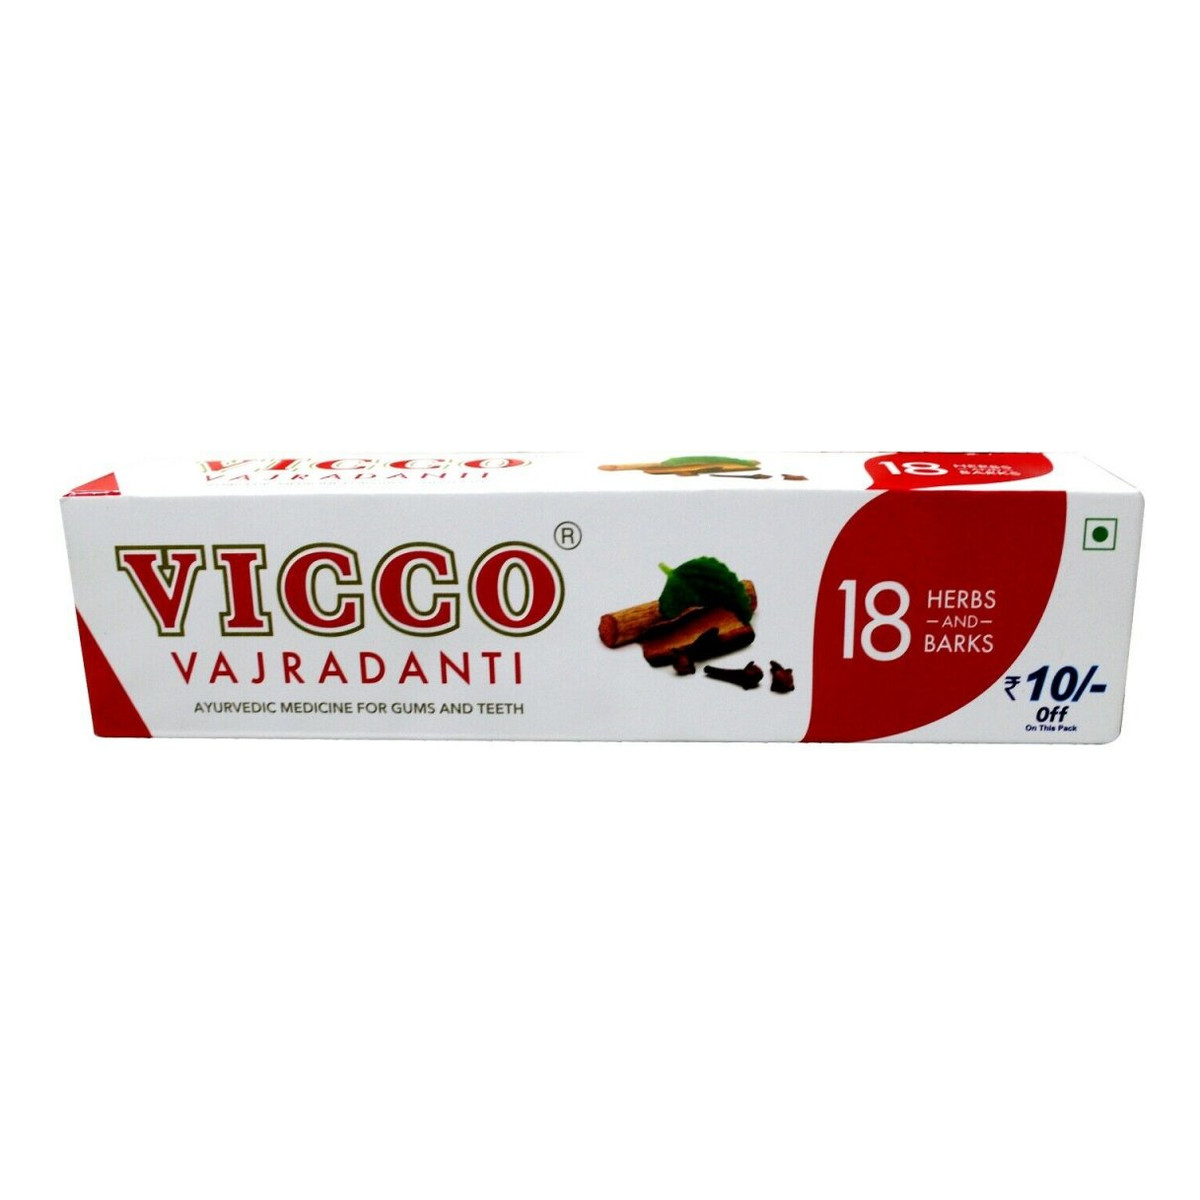 Vicco Vajradanti pasta do zębów 200g